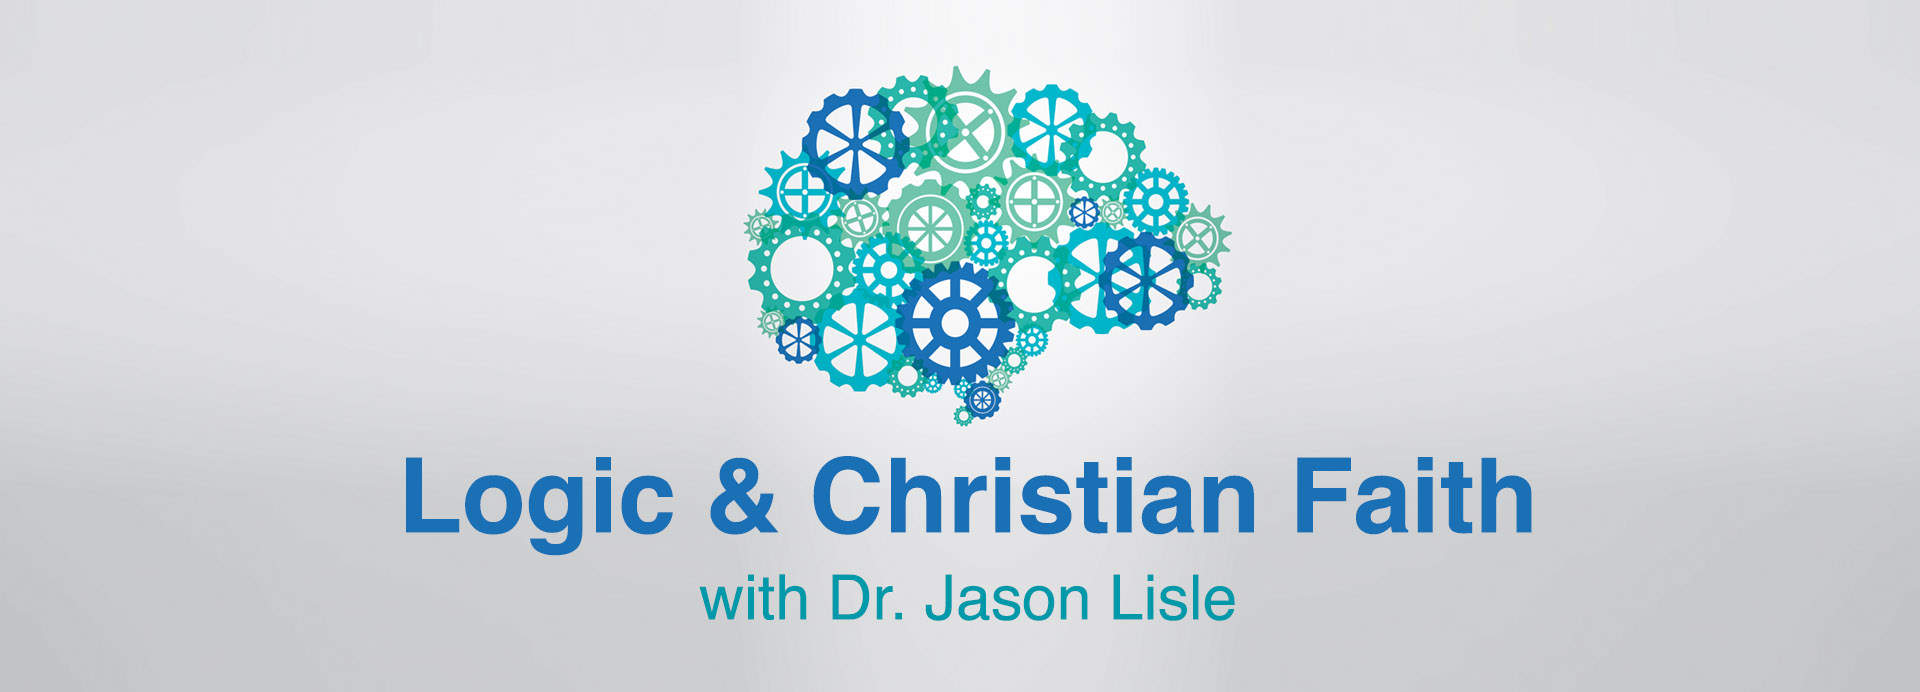 Logic & Christian Faith